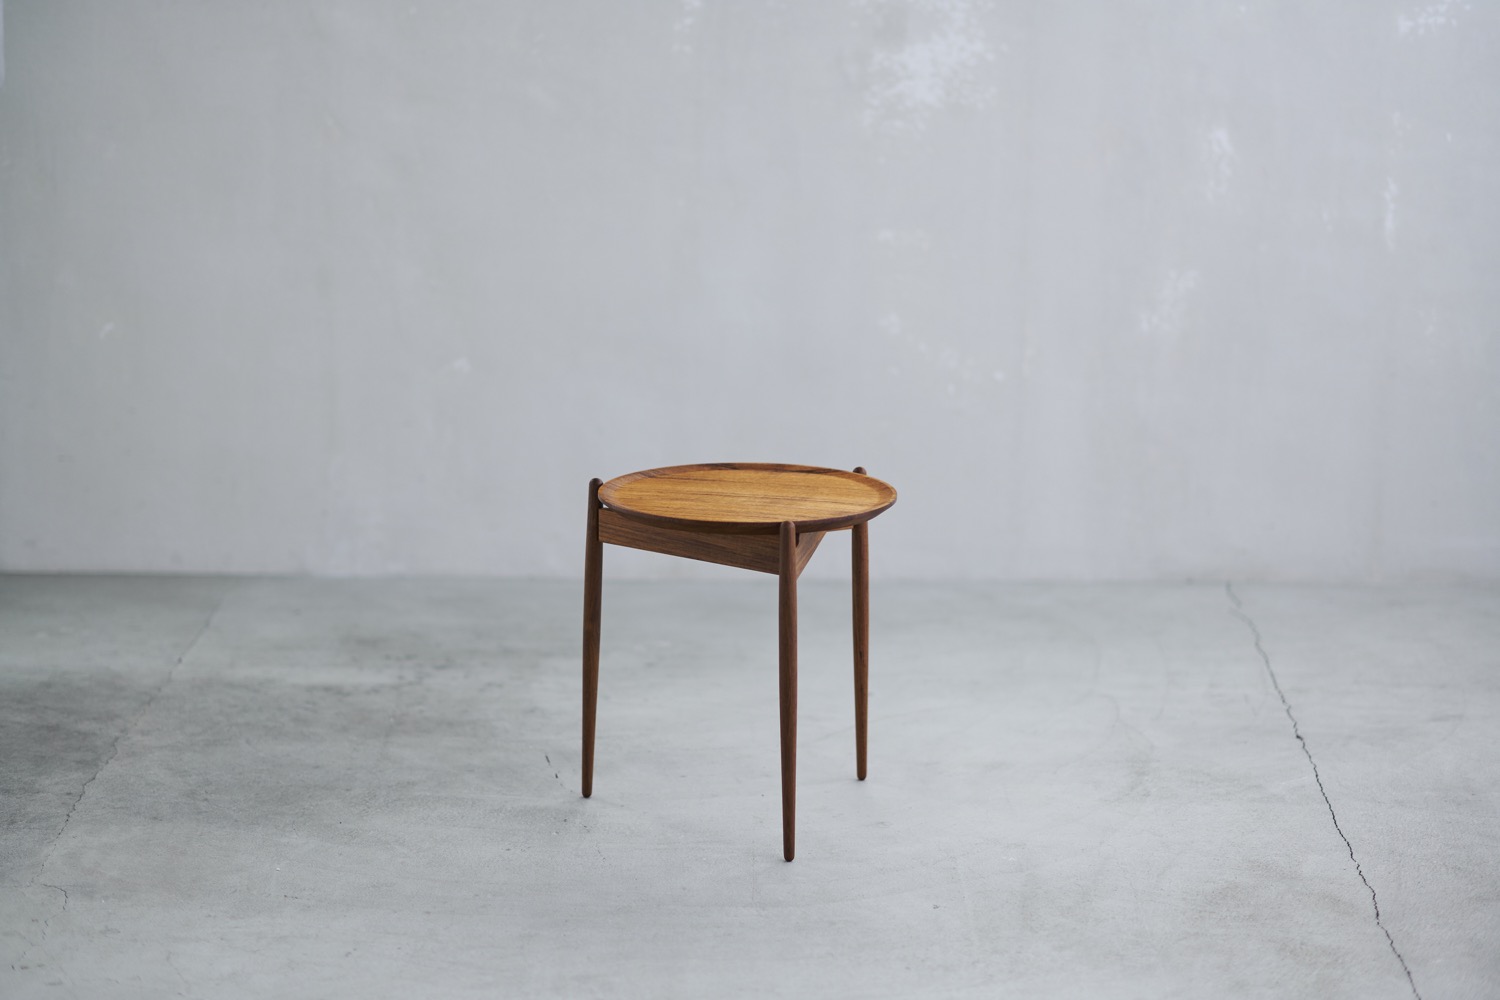 Zen table for [ocasi]